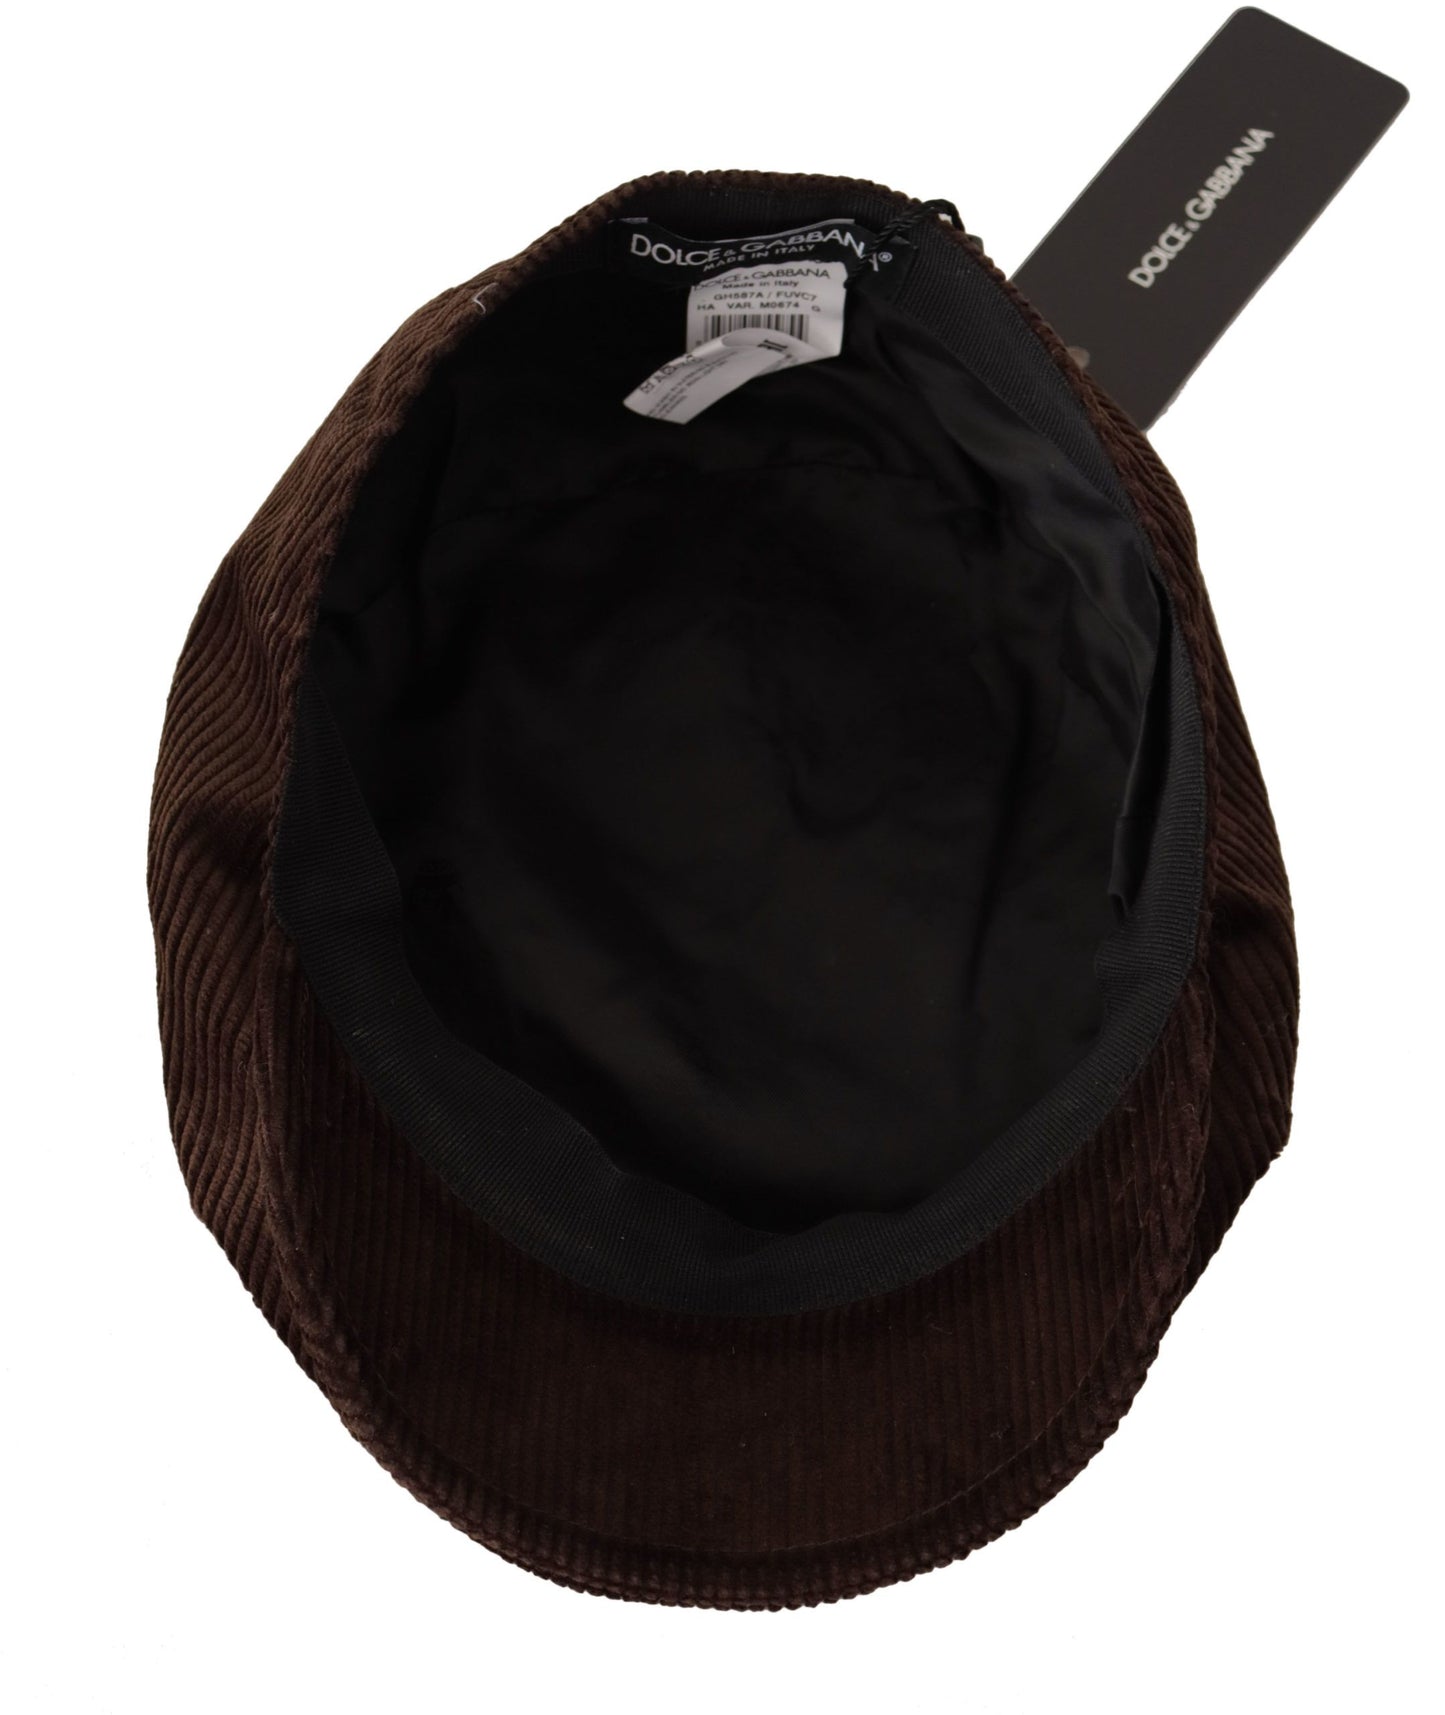 Dolce & Gabbana Elegant Cotton Newsboy Hat in Rich Brown